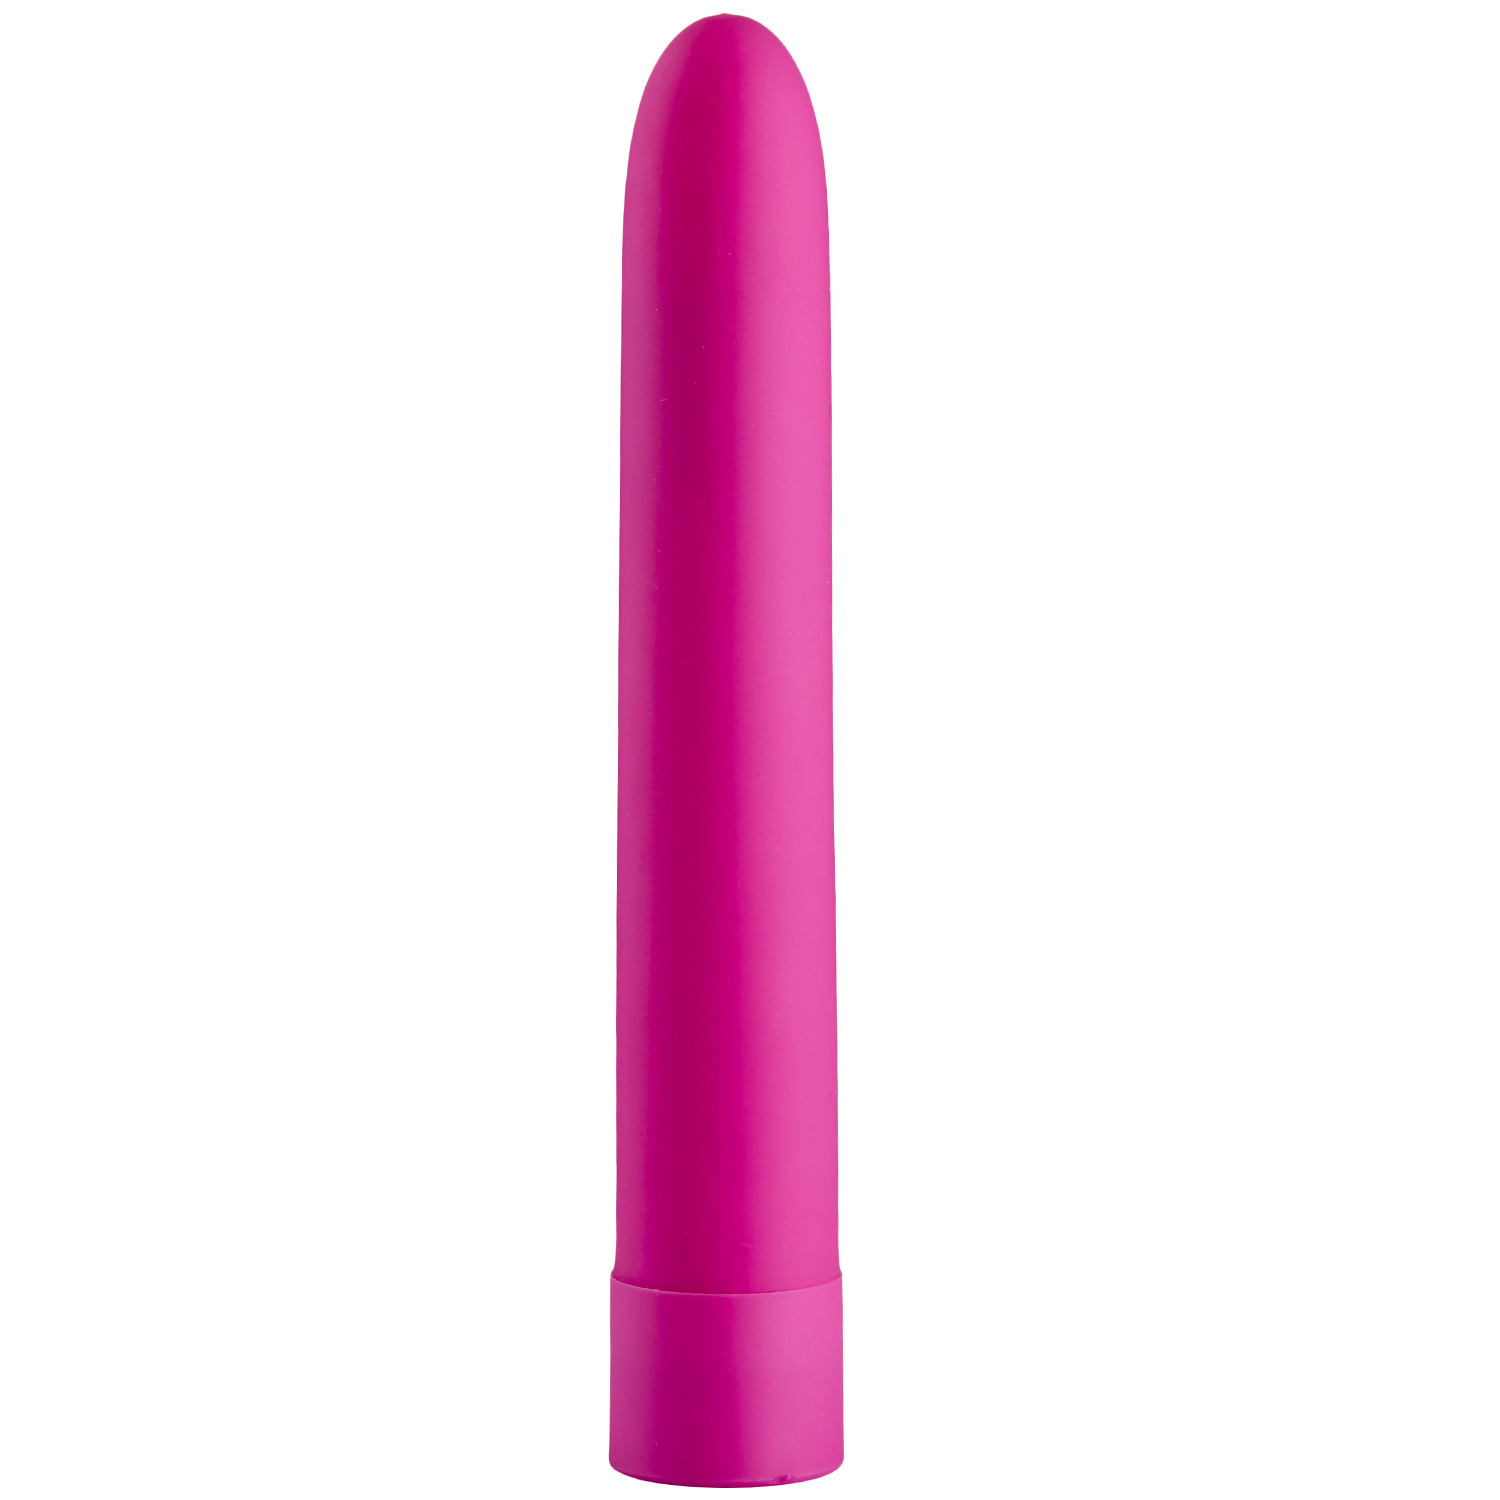 Baseks Klassisk 10-Speed Power Vibrator      - Pink thumbnail